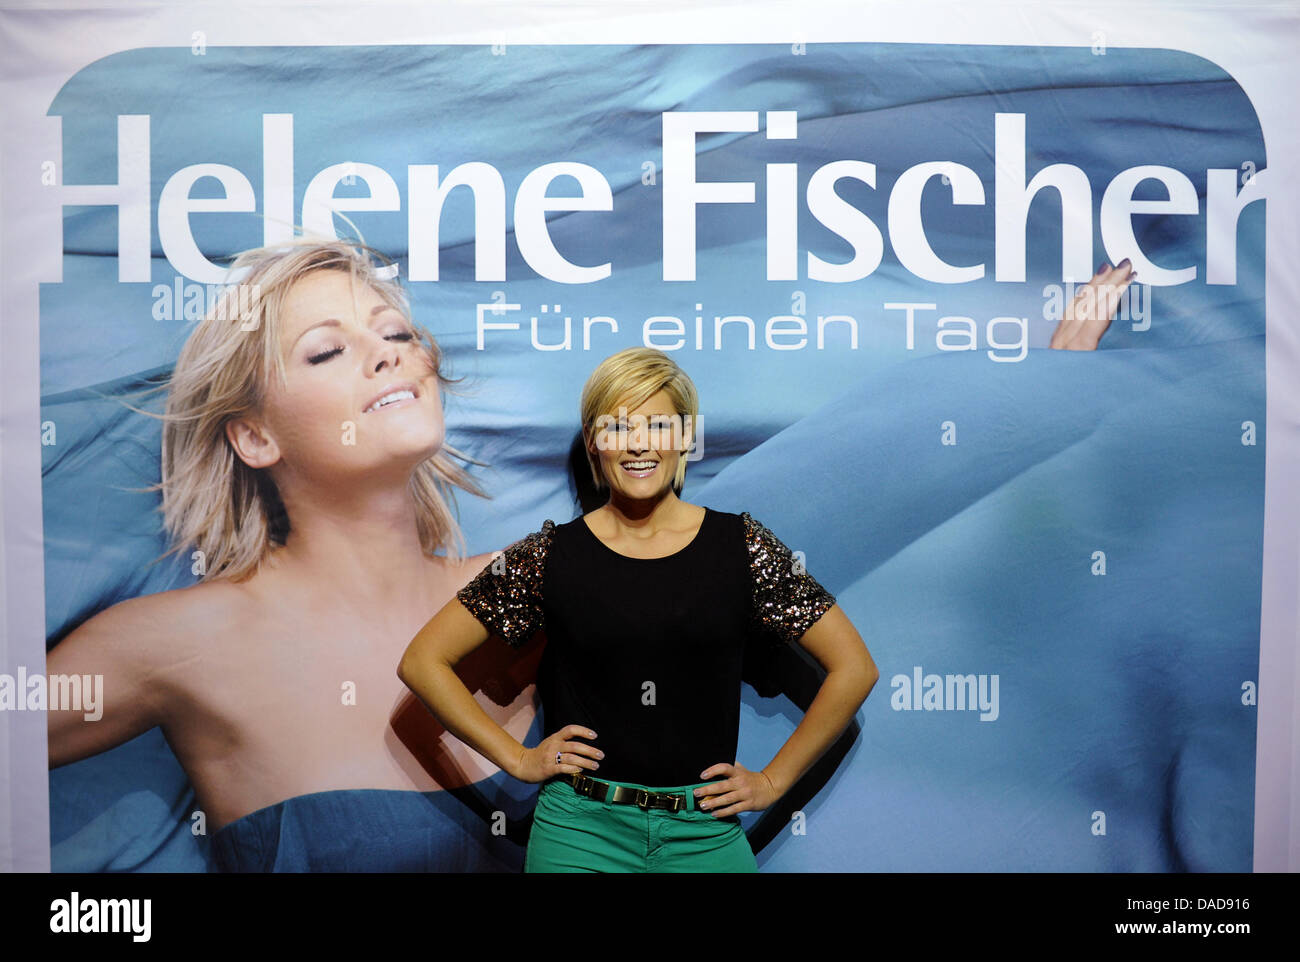 Deutsche Pop-Sängerin Helene Fischer posiert für die Presse in Hamburg, Deutschland, 12. Oktober 2011. Die Sängerin präsentiert ihr neues Album "Fuer Einen Tag" ("für einen Tag"). Foto: ANGELIKA WARMUTH Stockfoto